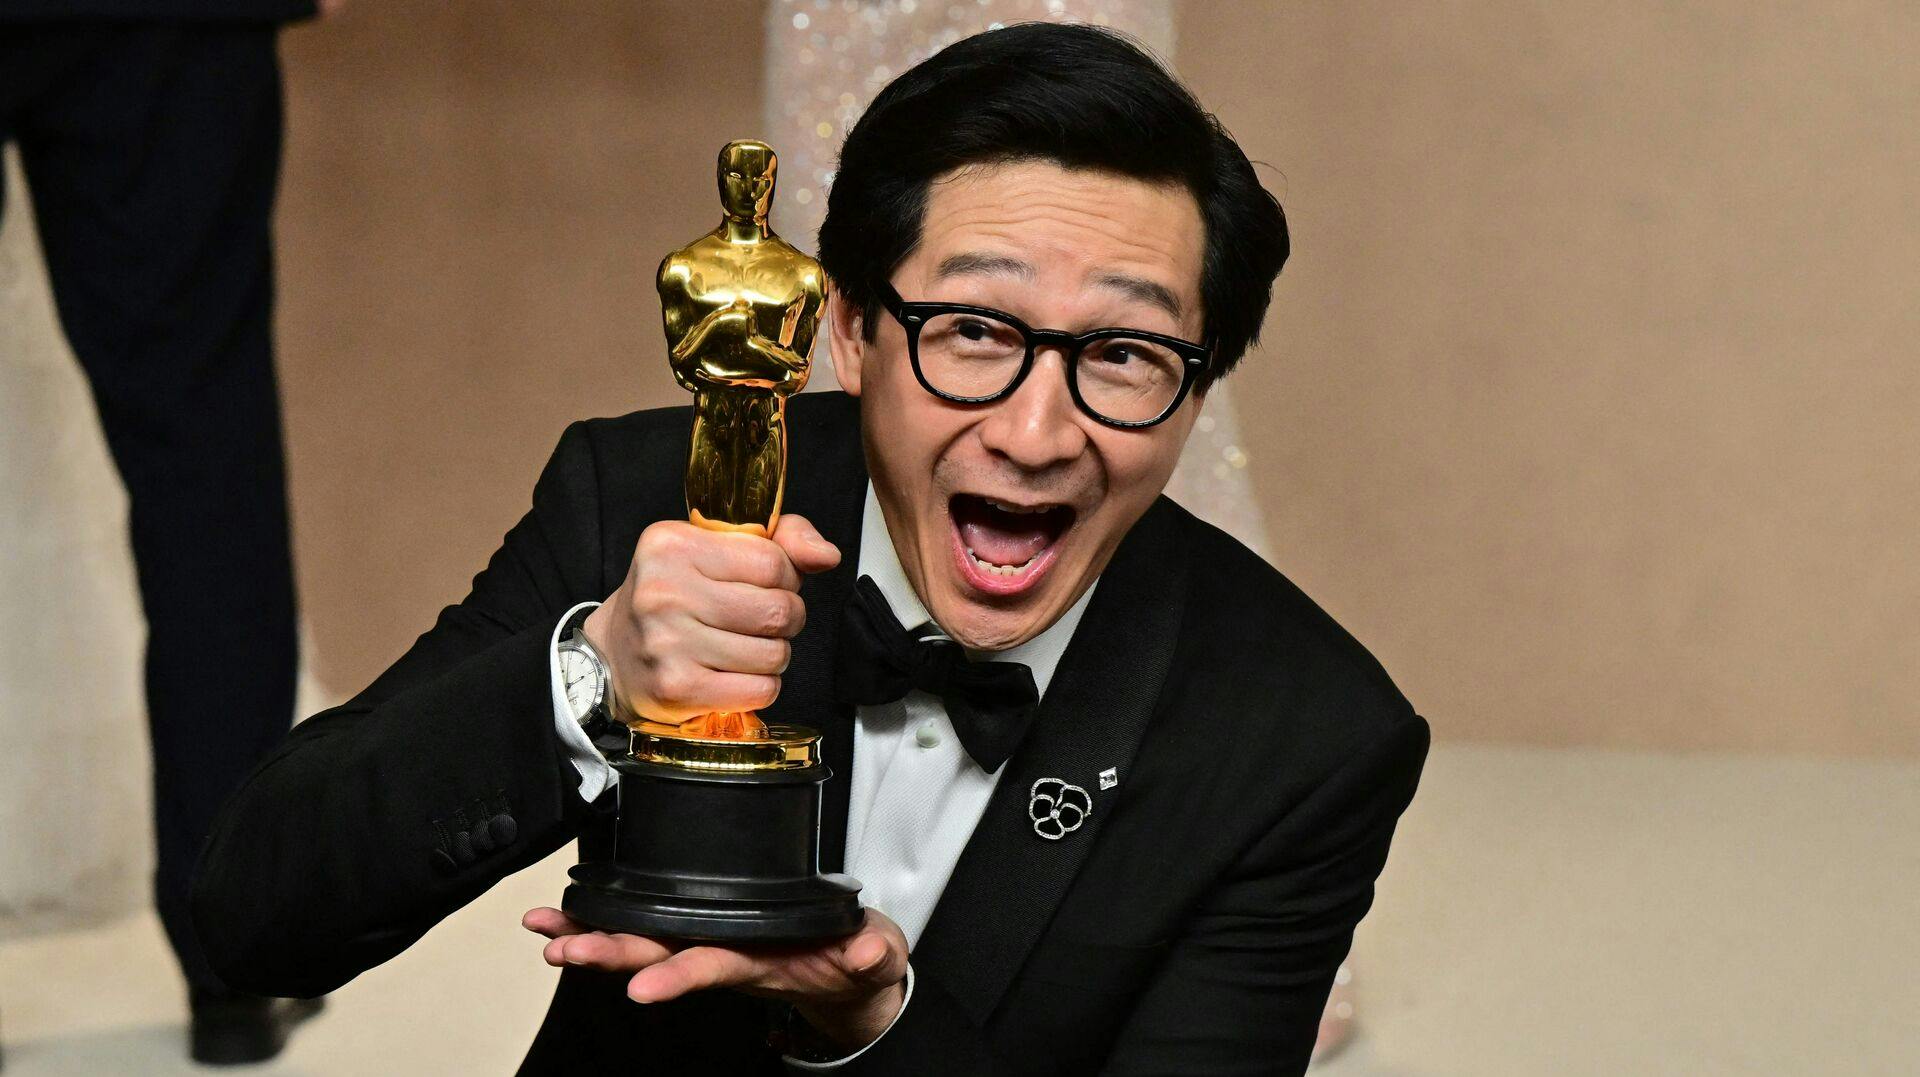 Det er ikke kun Ke Huy Quan, der jubler over sin Oscar-statuette. Det gør man også i Danmark.